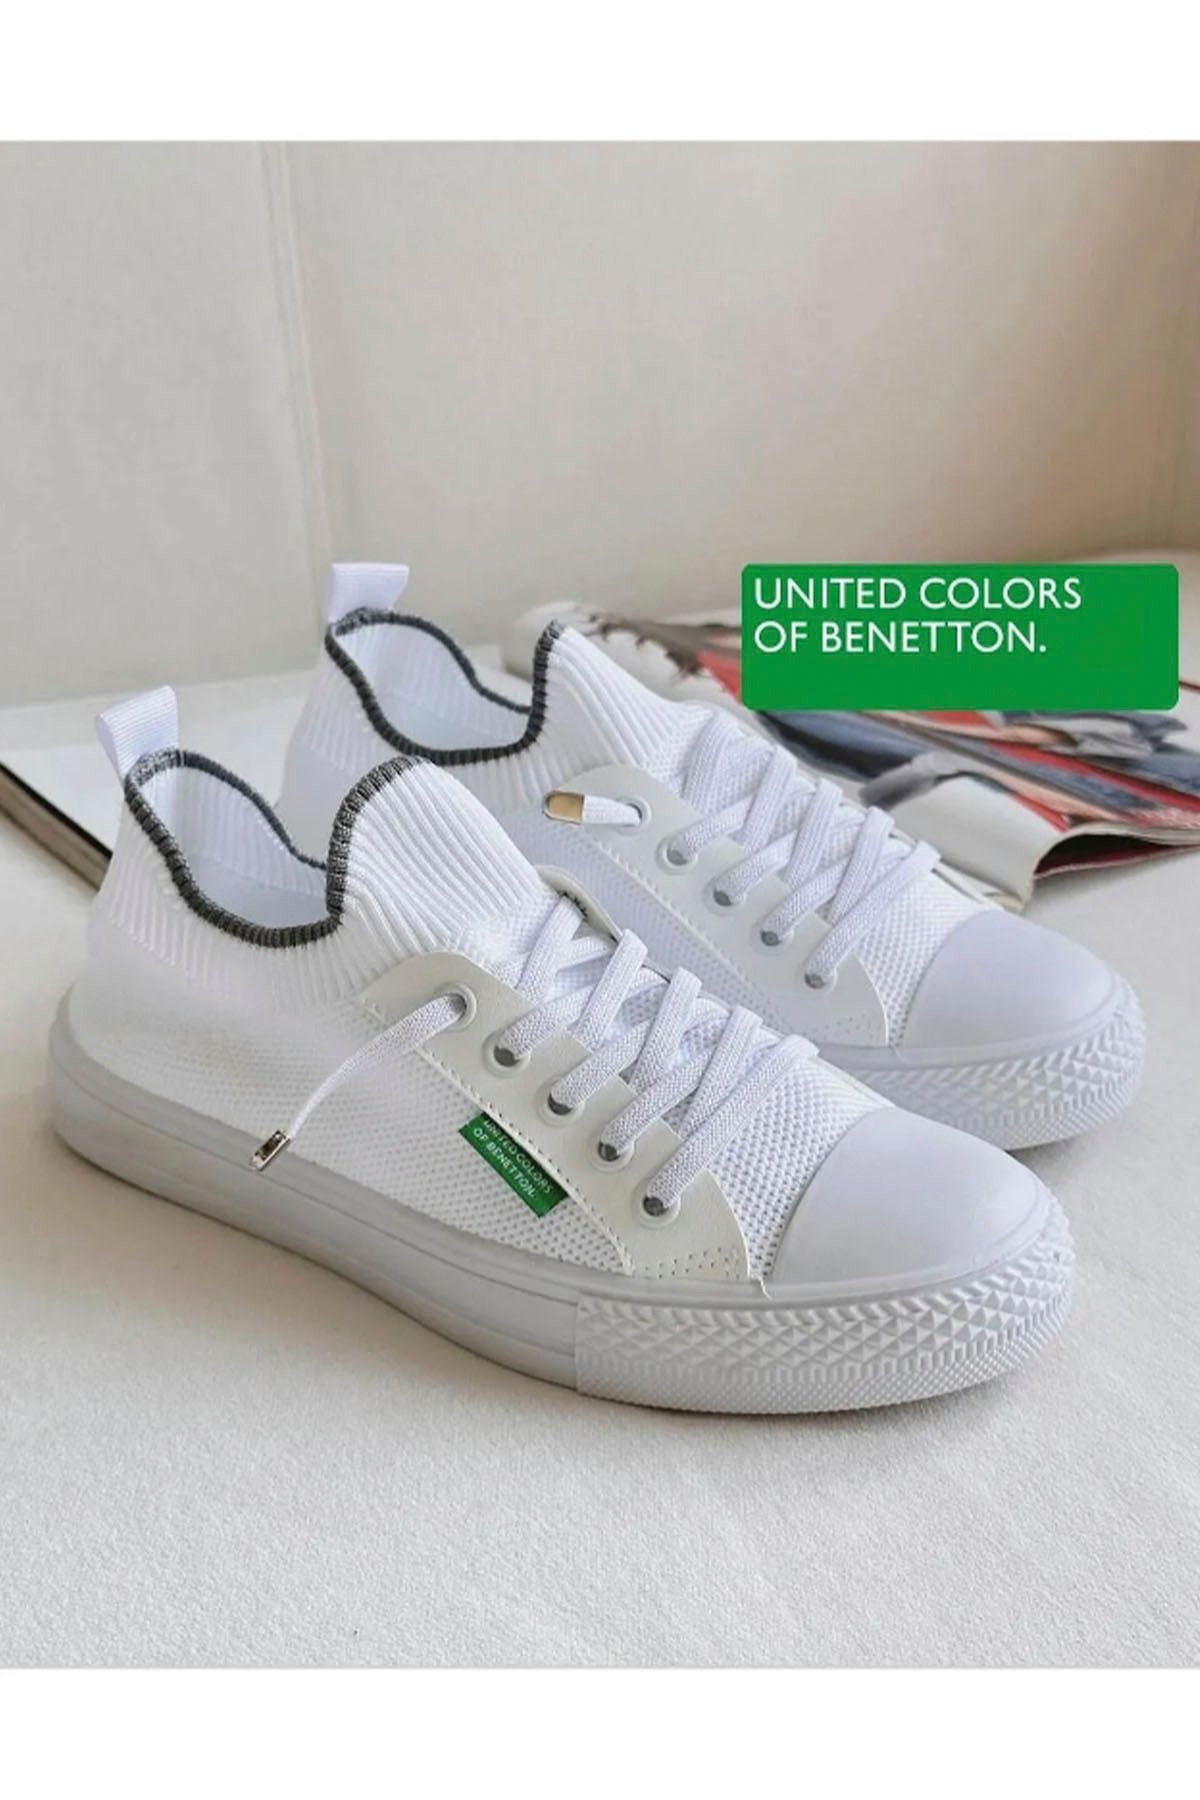 Benetton 10233 Kadın Günlük Sneaker Ayakkabı